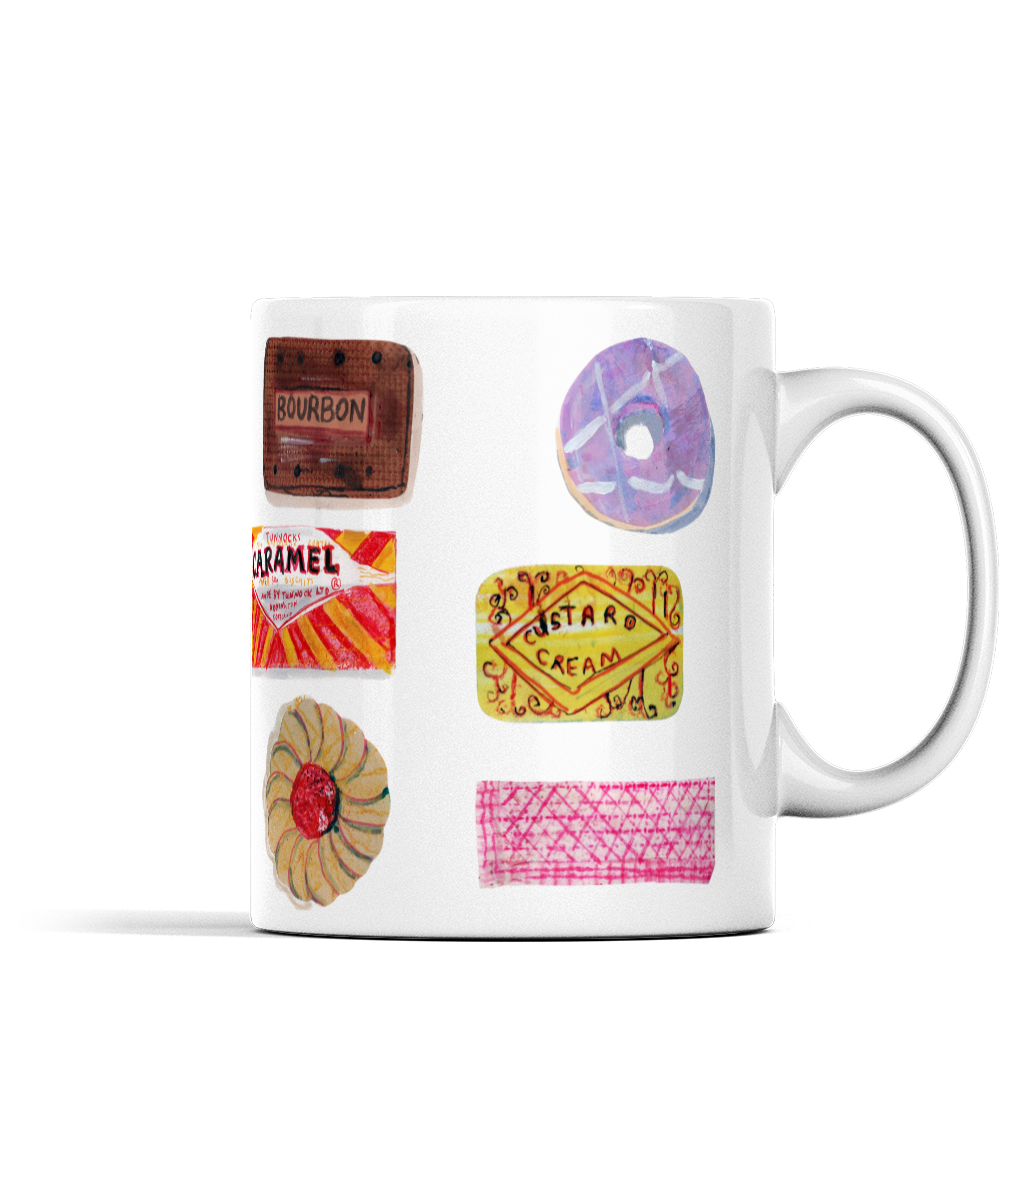 sweet treats ceramic mug